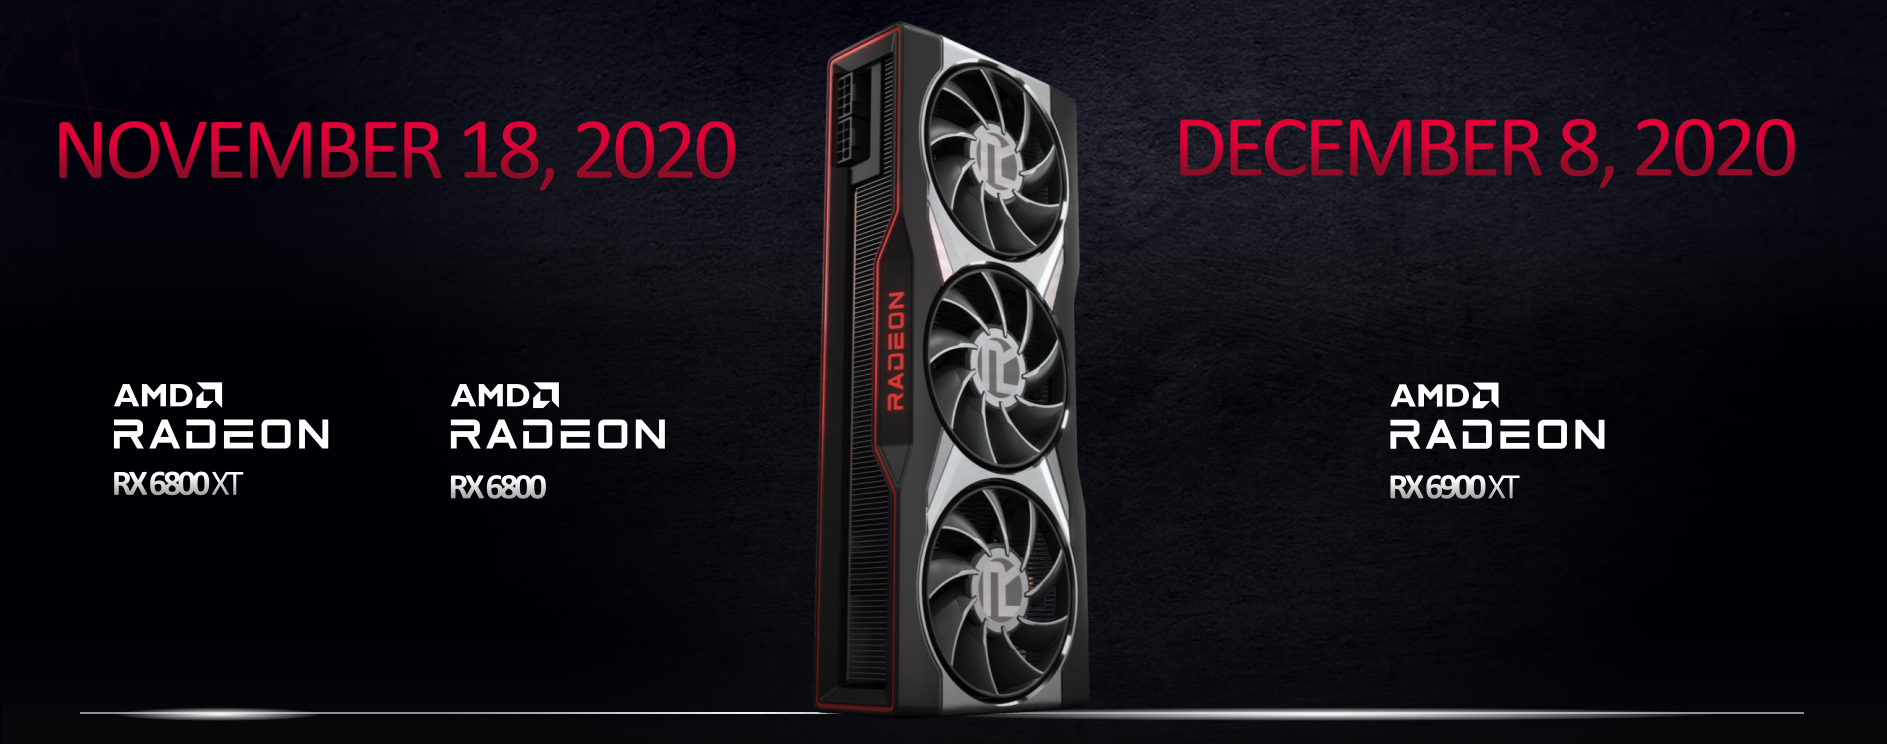 AMD Radeon RX 6900 XT vs RX 6800 XT vs RX 6800